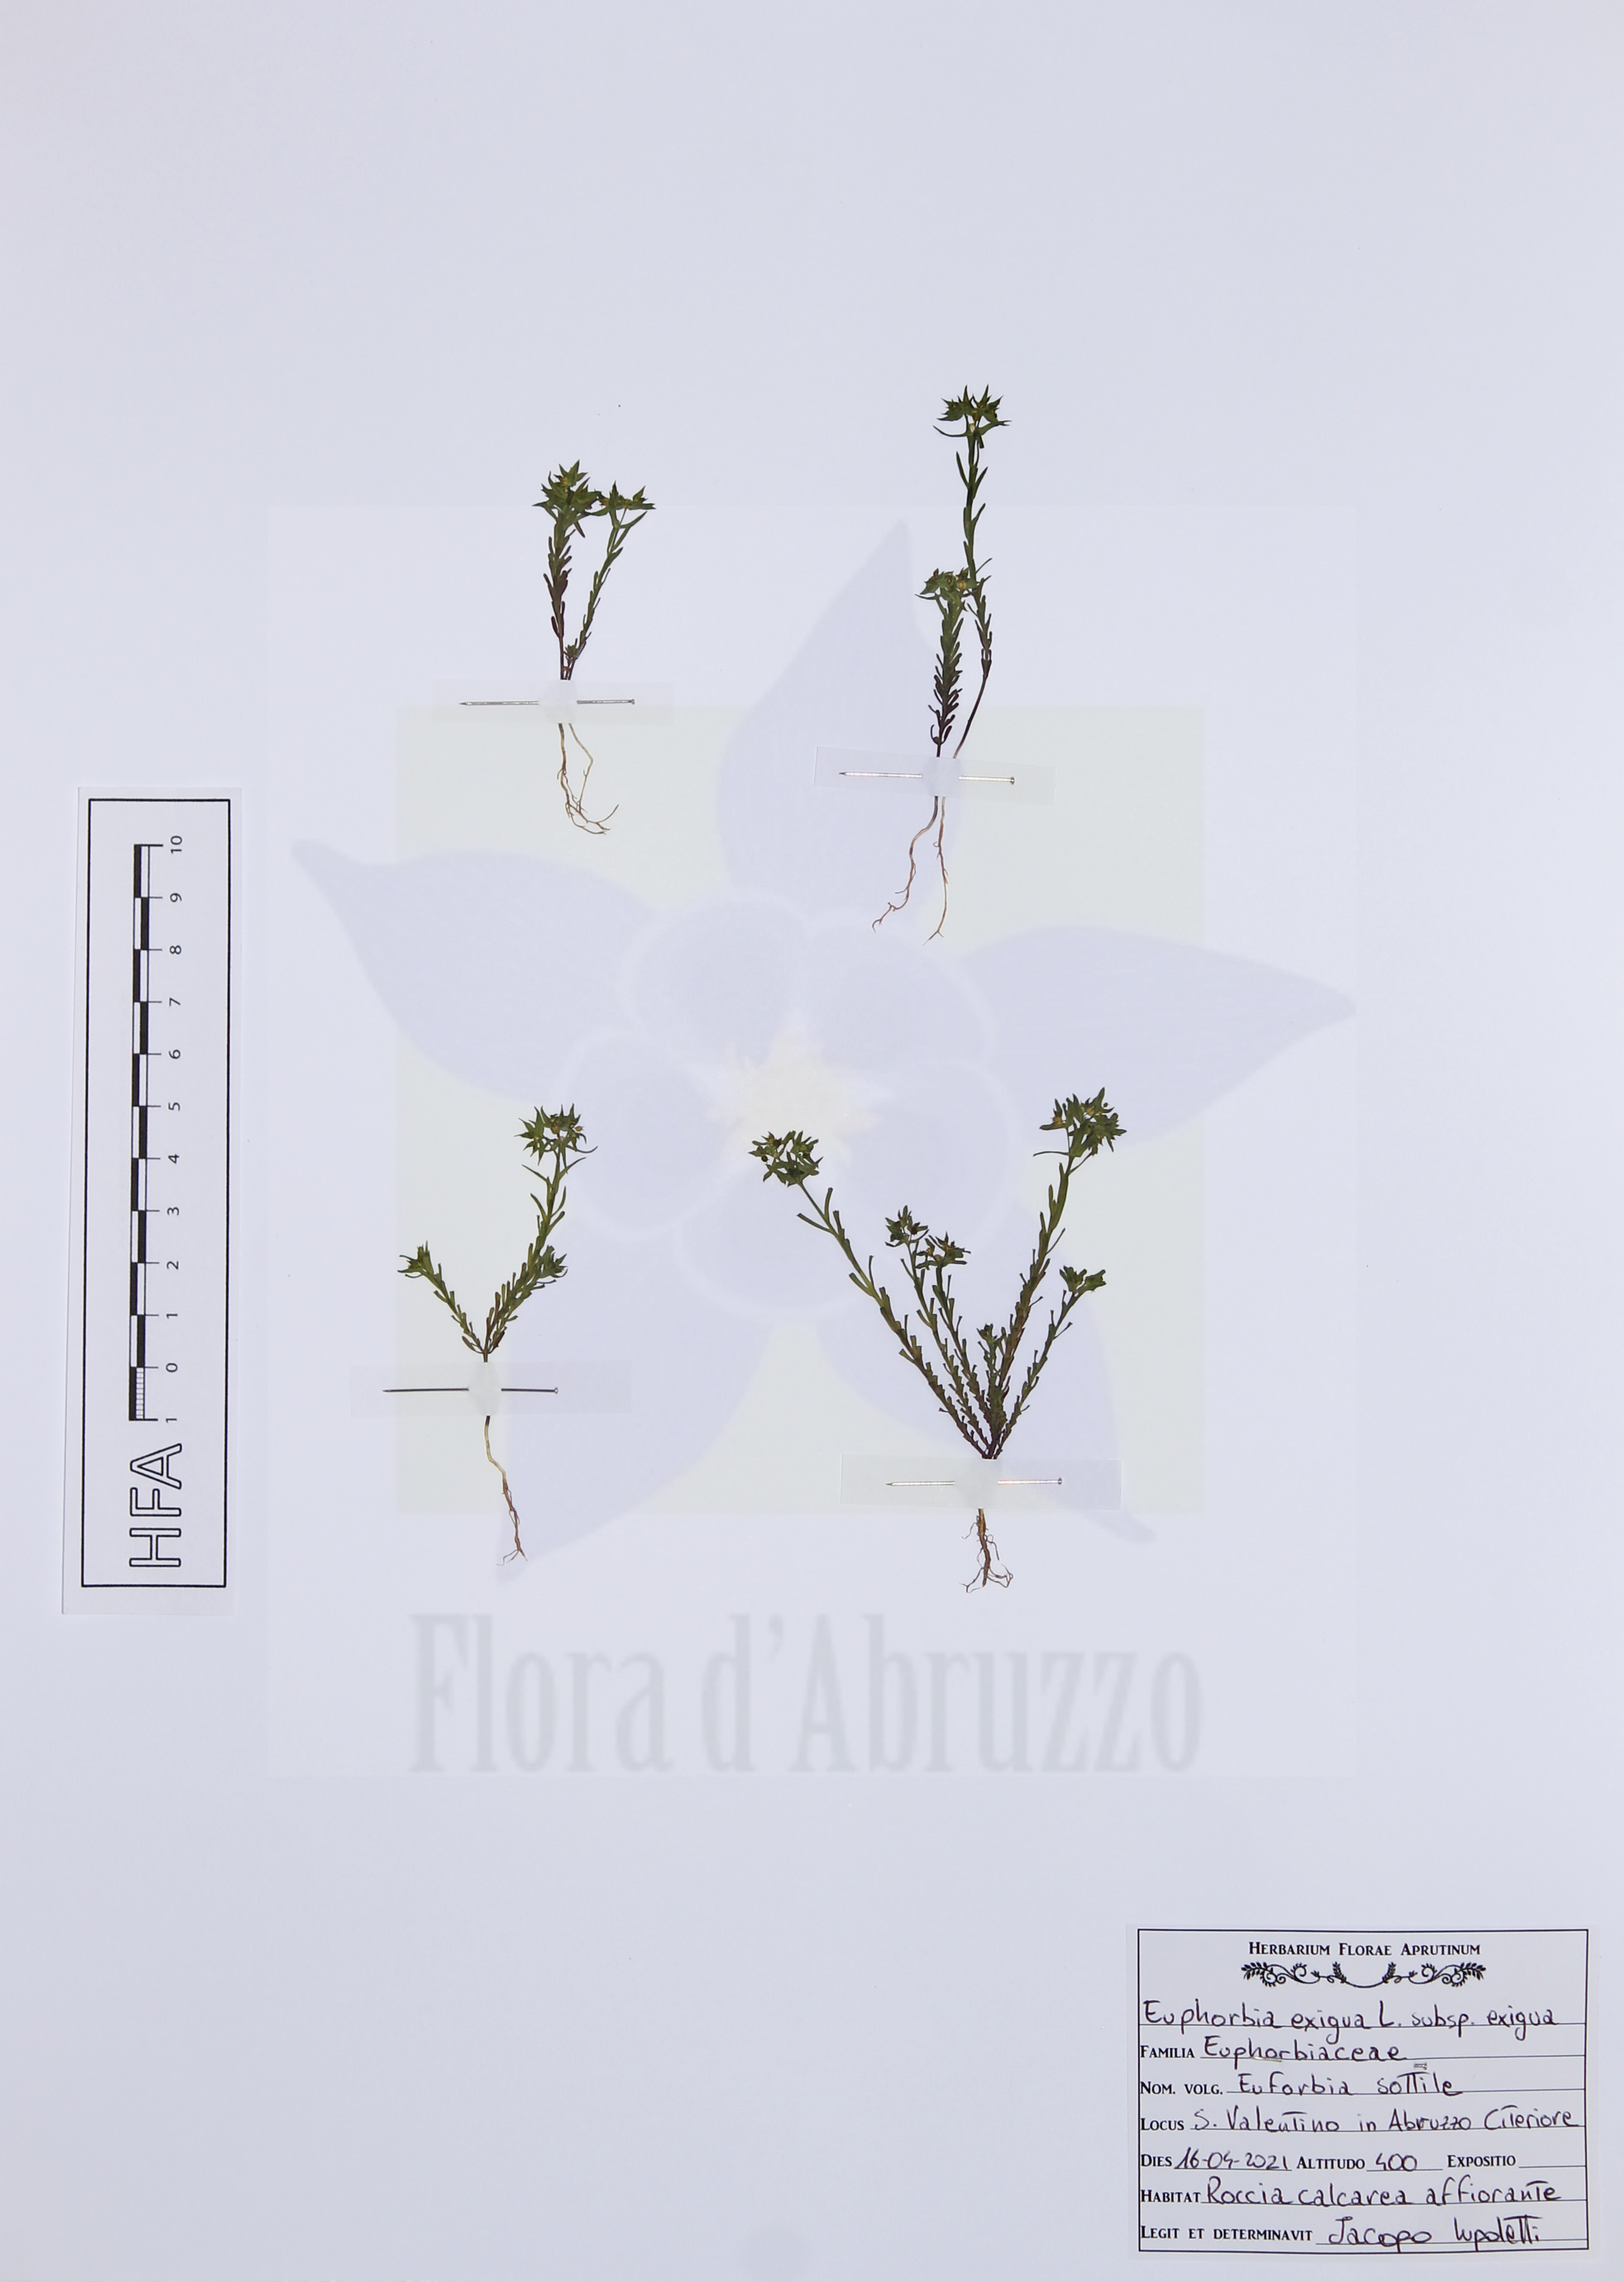 Euphorbia exigua L. subsp. exigua